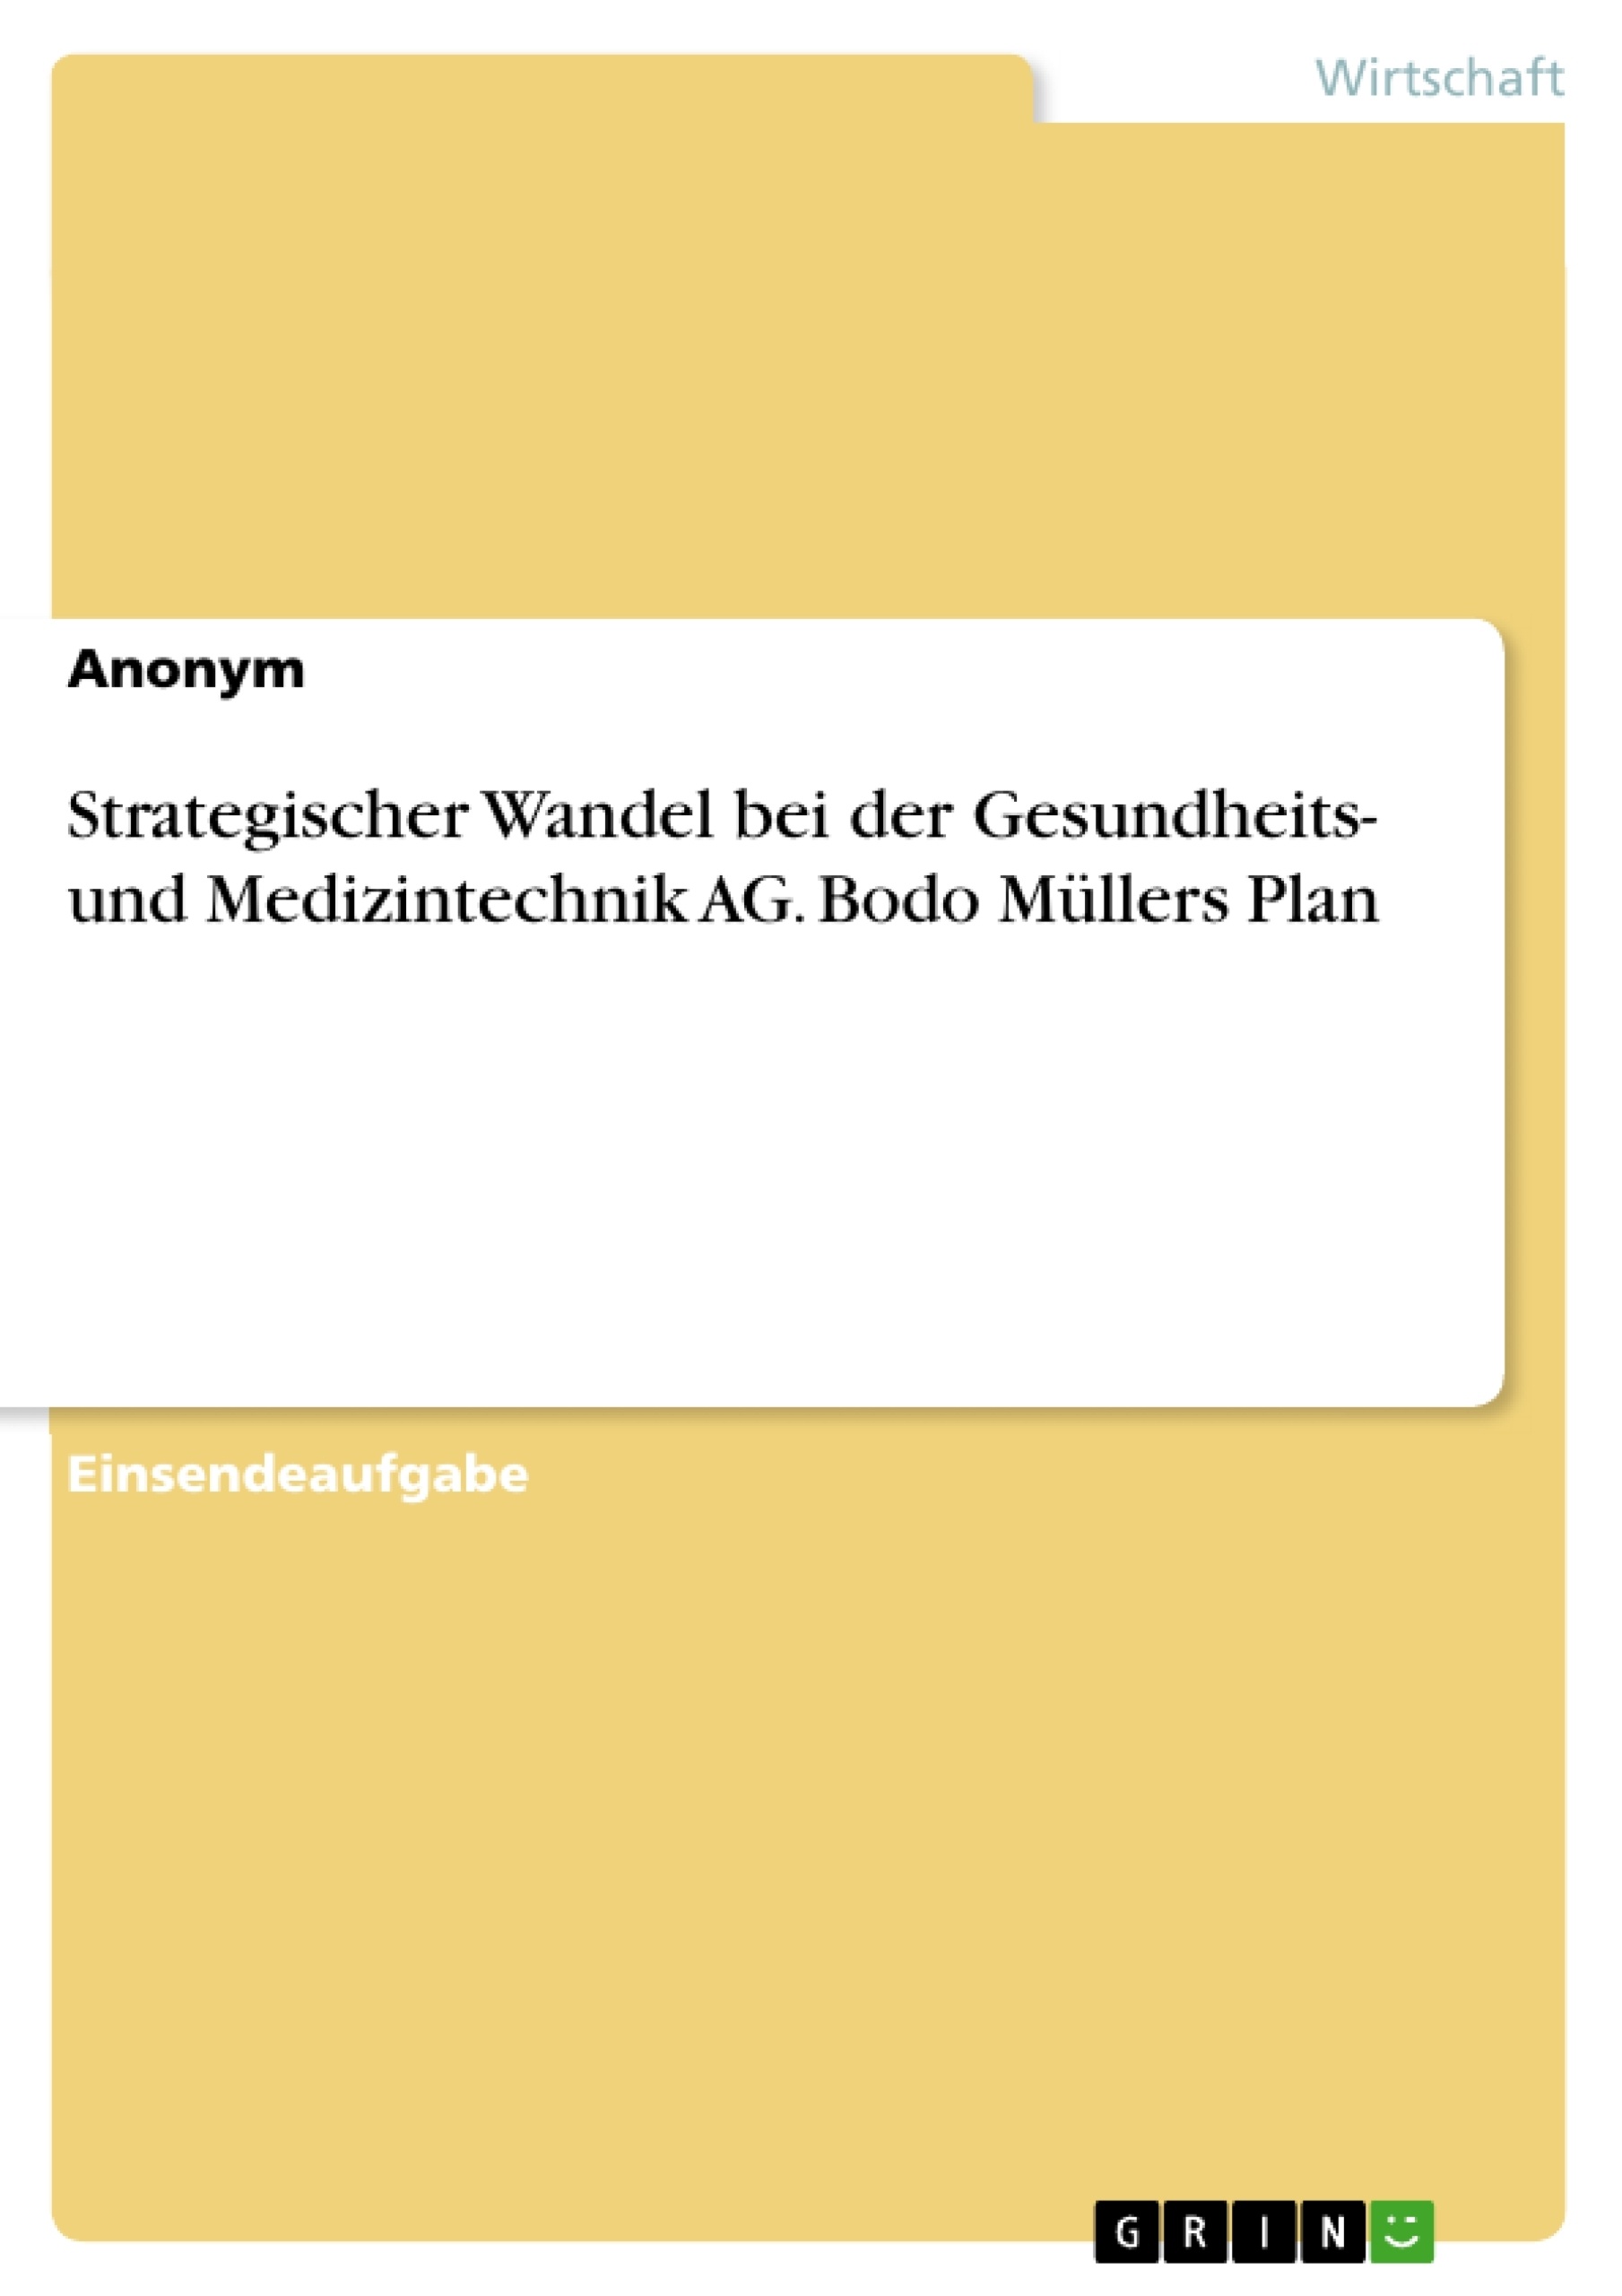 Título: Strategischer Wandel bei der Gesundheits- und Medizintechnik AG. Bodo Müllers Plan